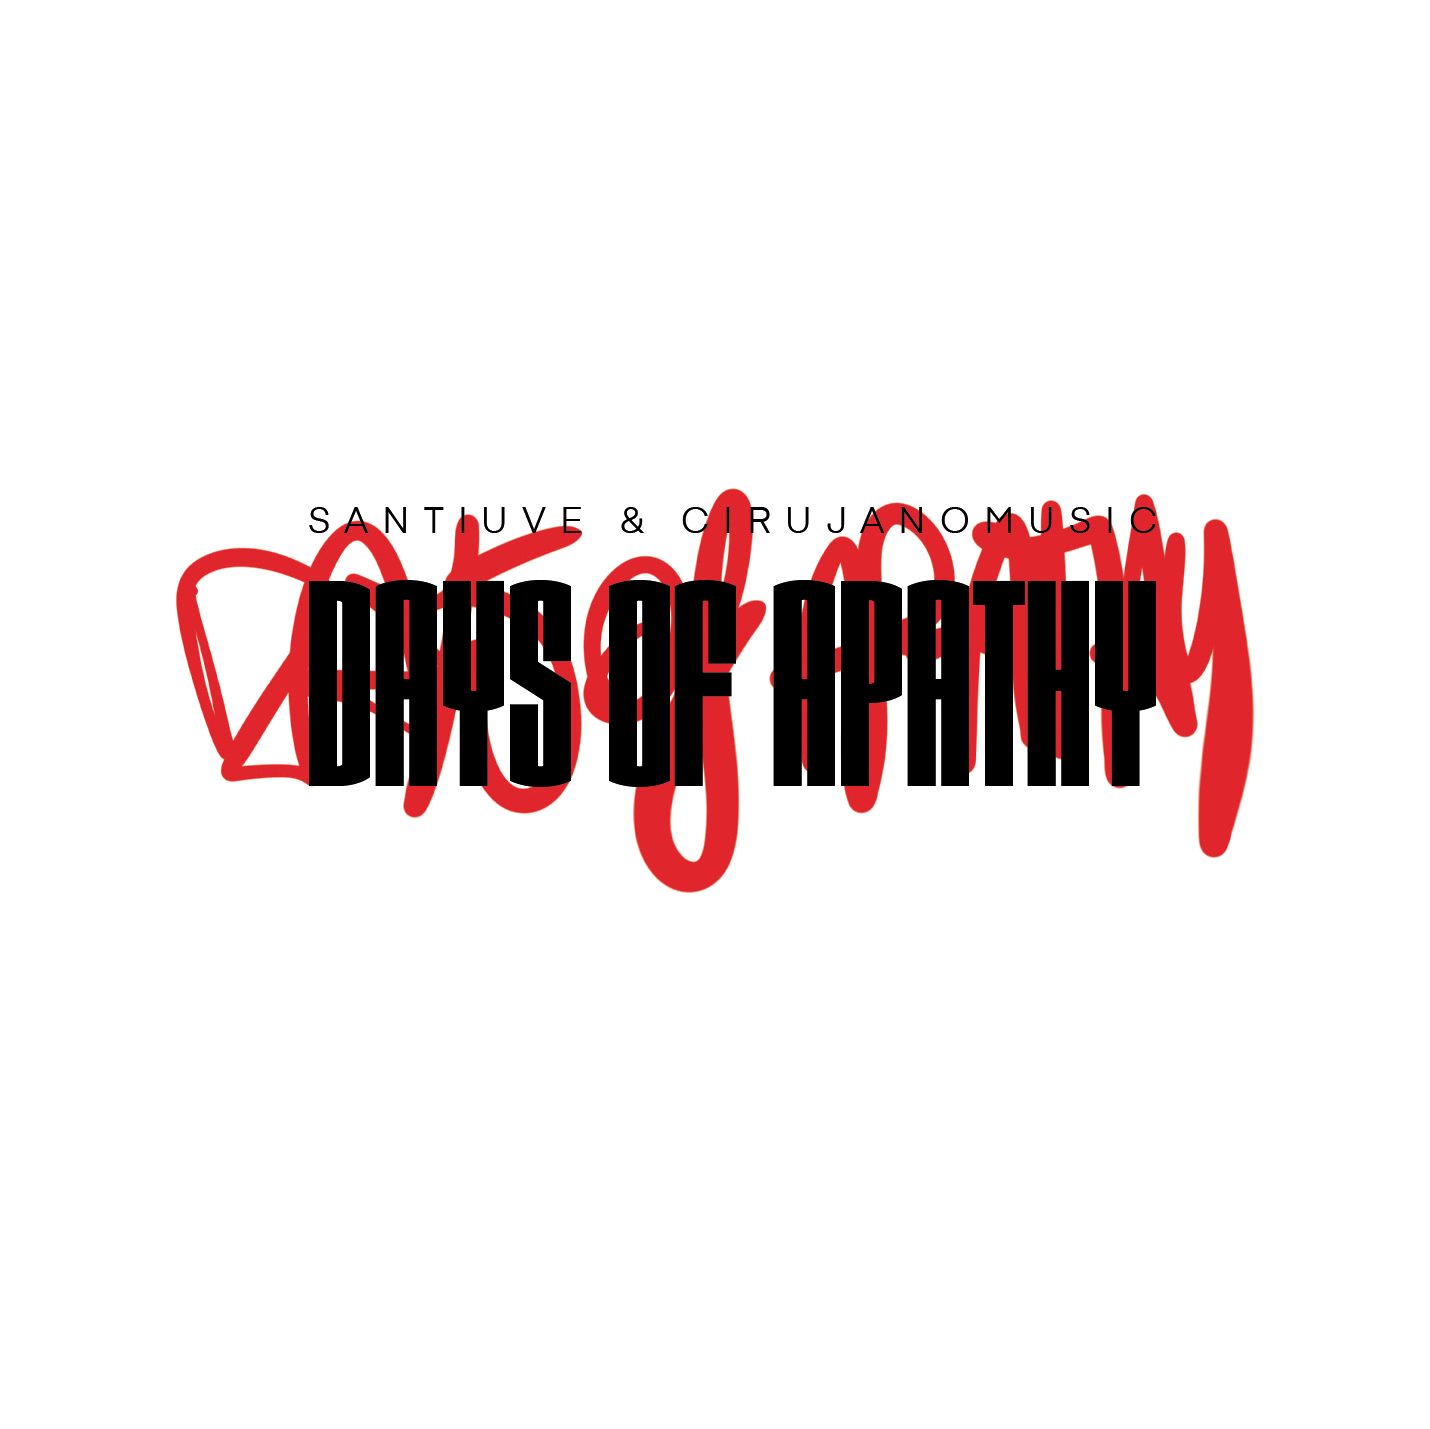 Santiuve___cirujano_music_days_of_apathy